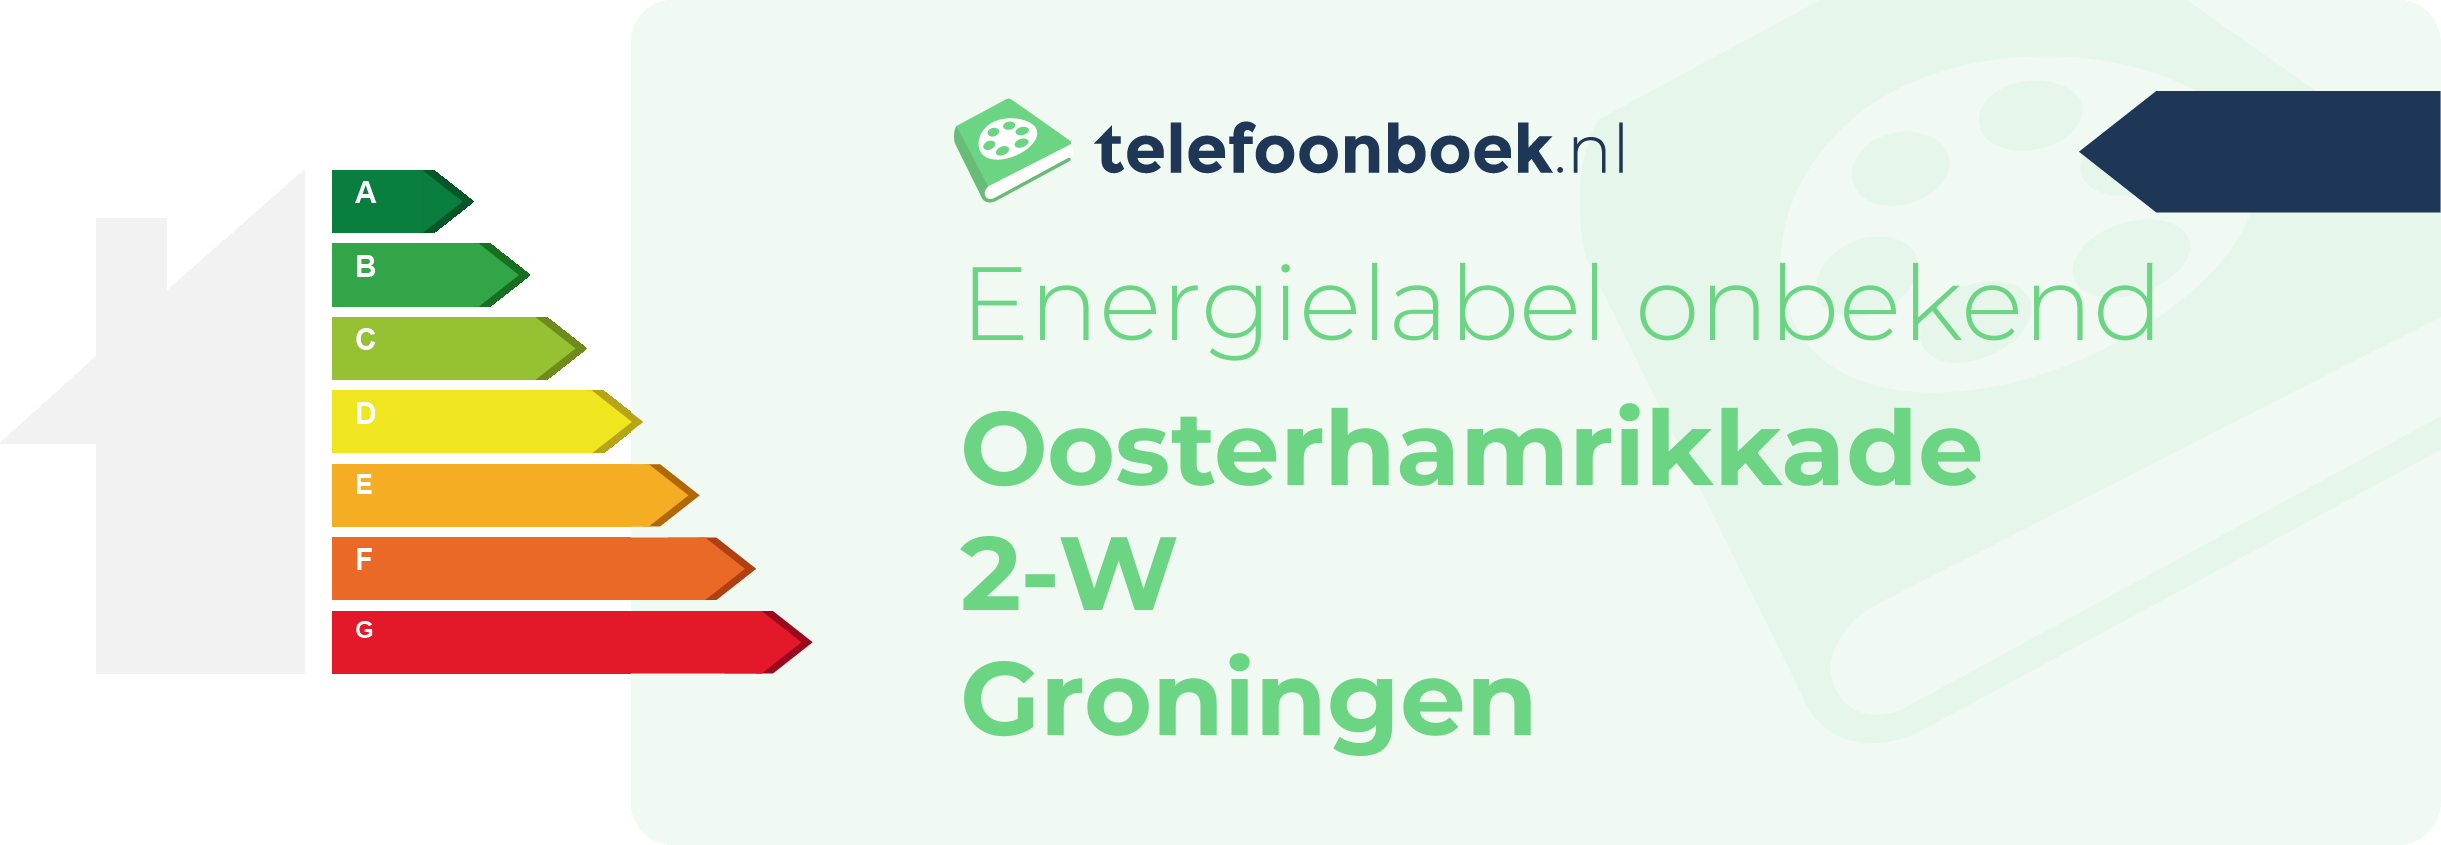 Energielabel Oosterhamrikkade 2-W Groningen